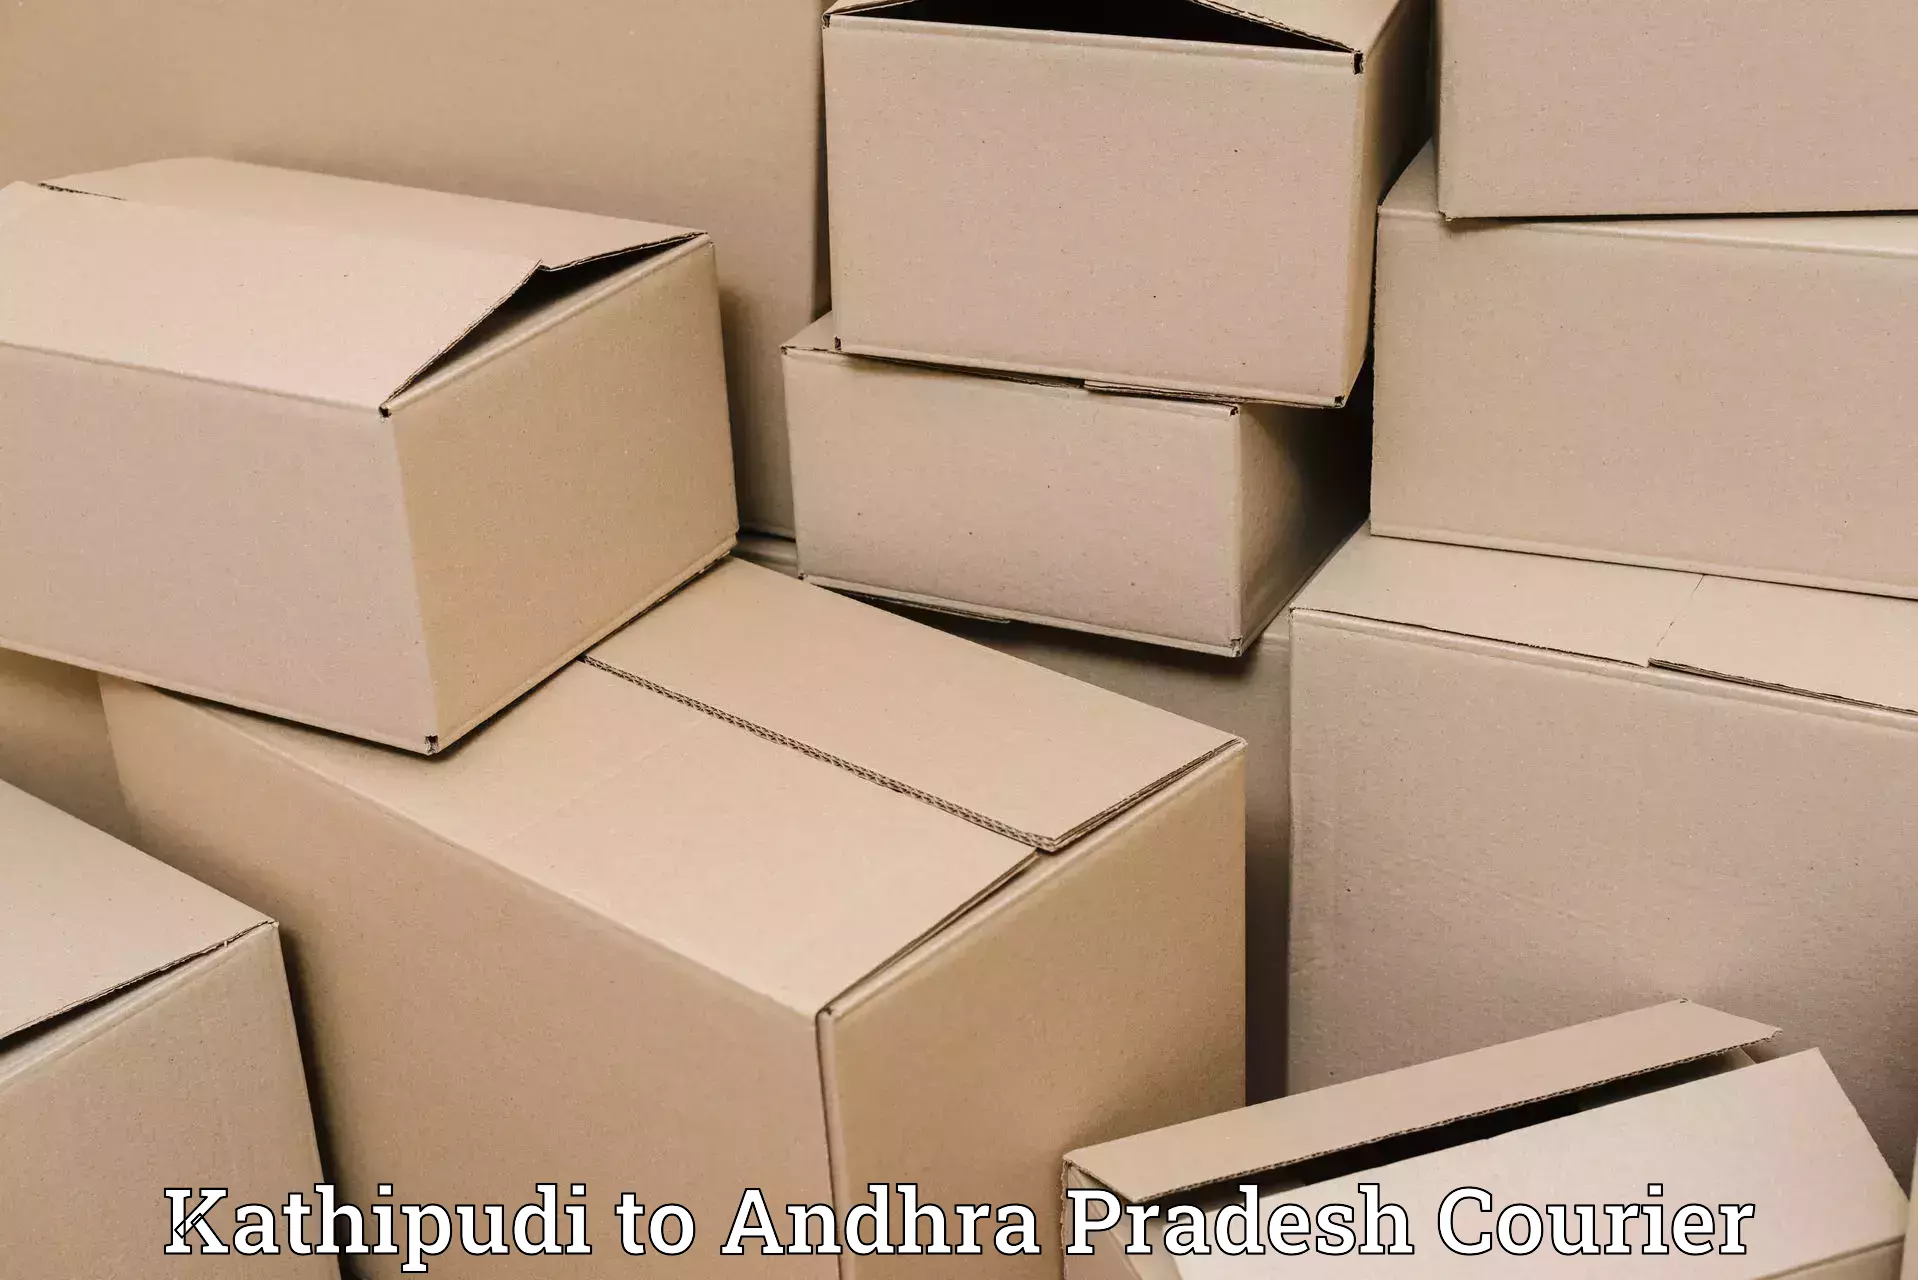 Supply chain efficiency Kathipudi to Jinnuru